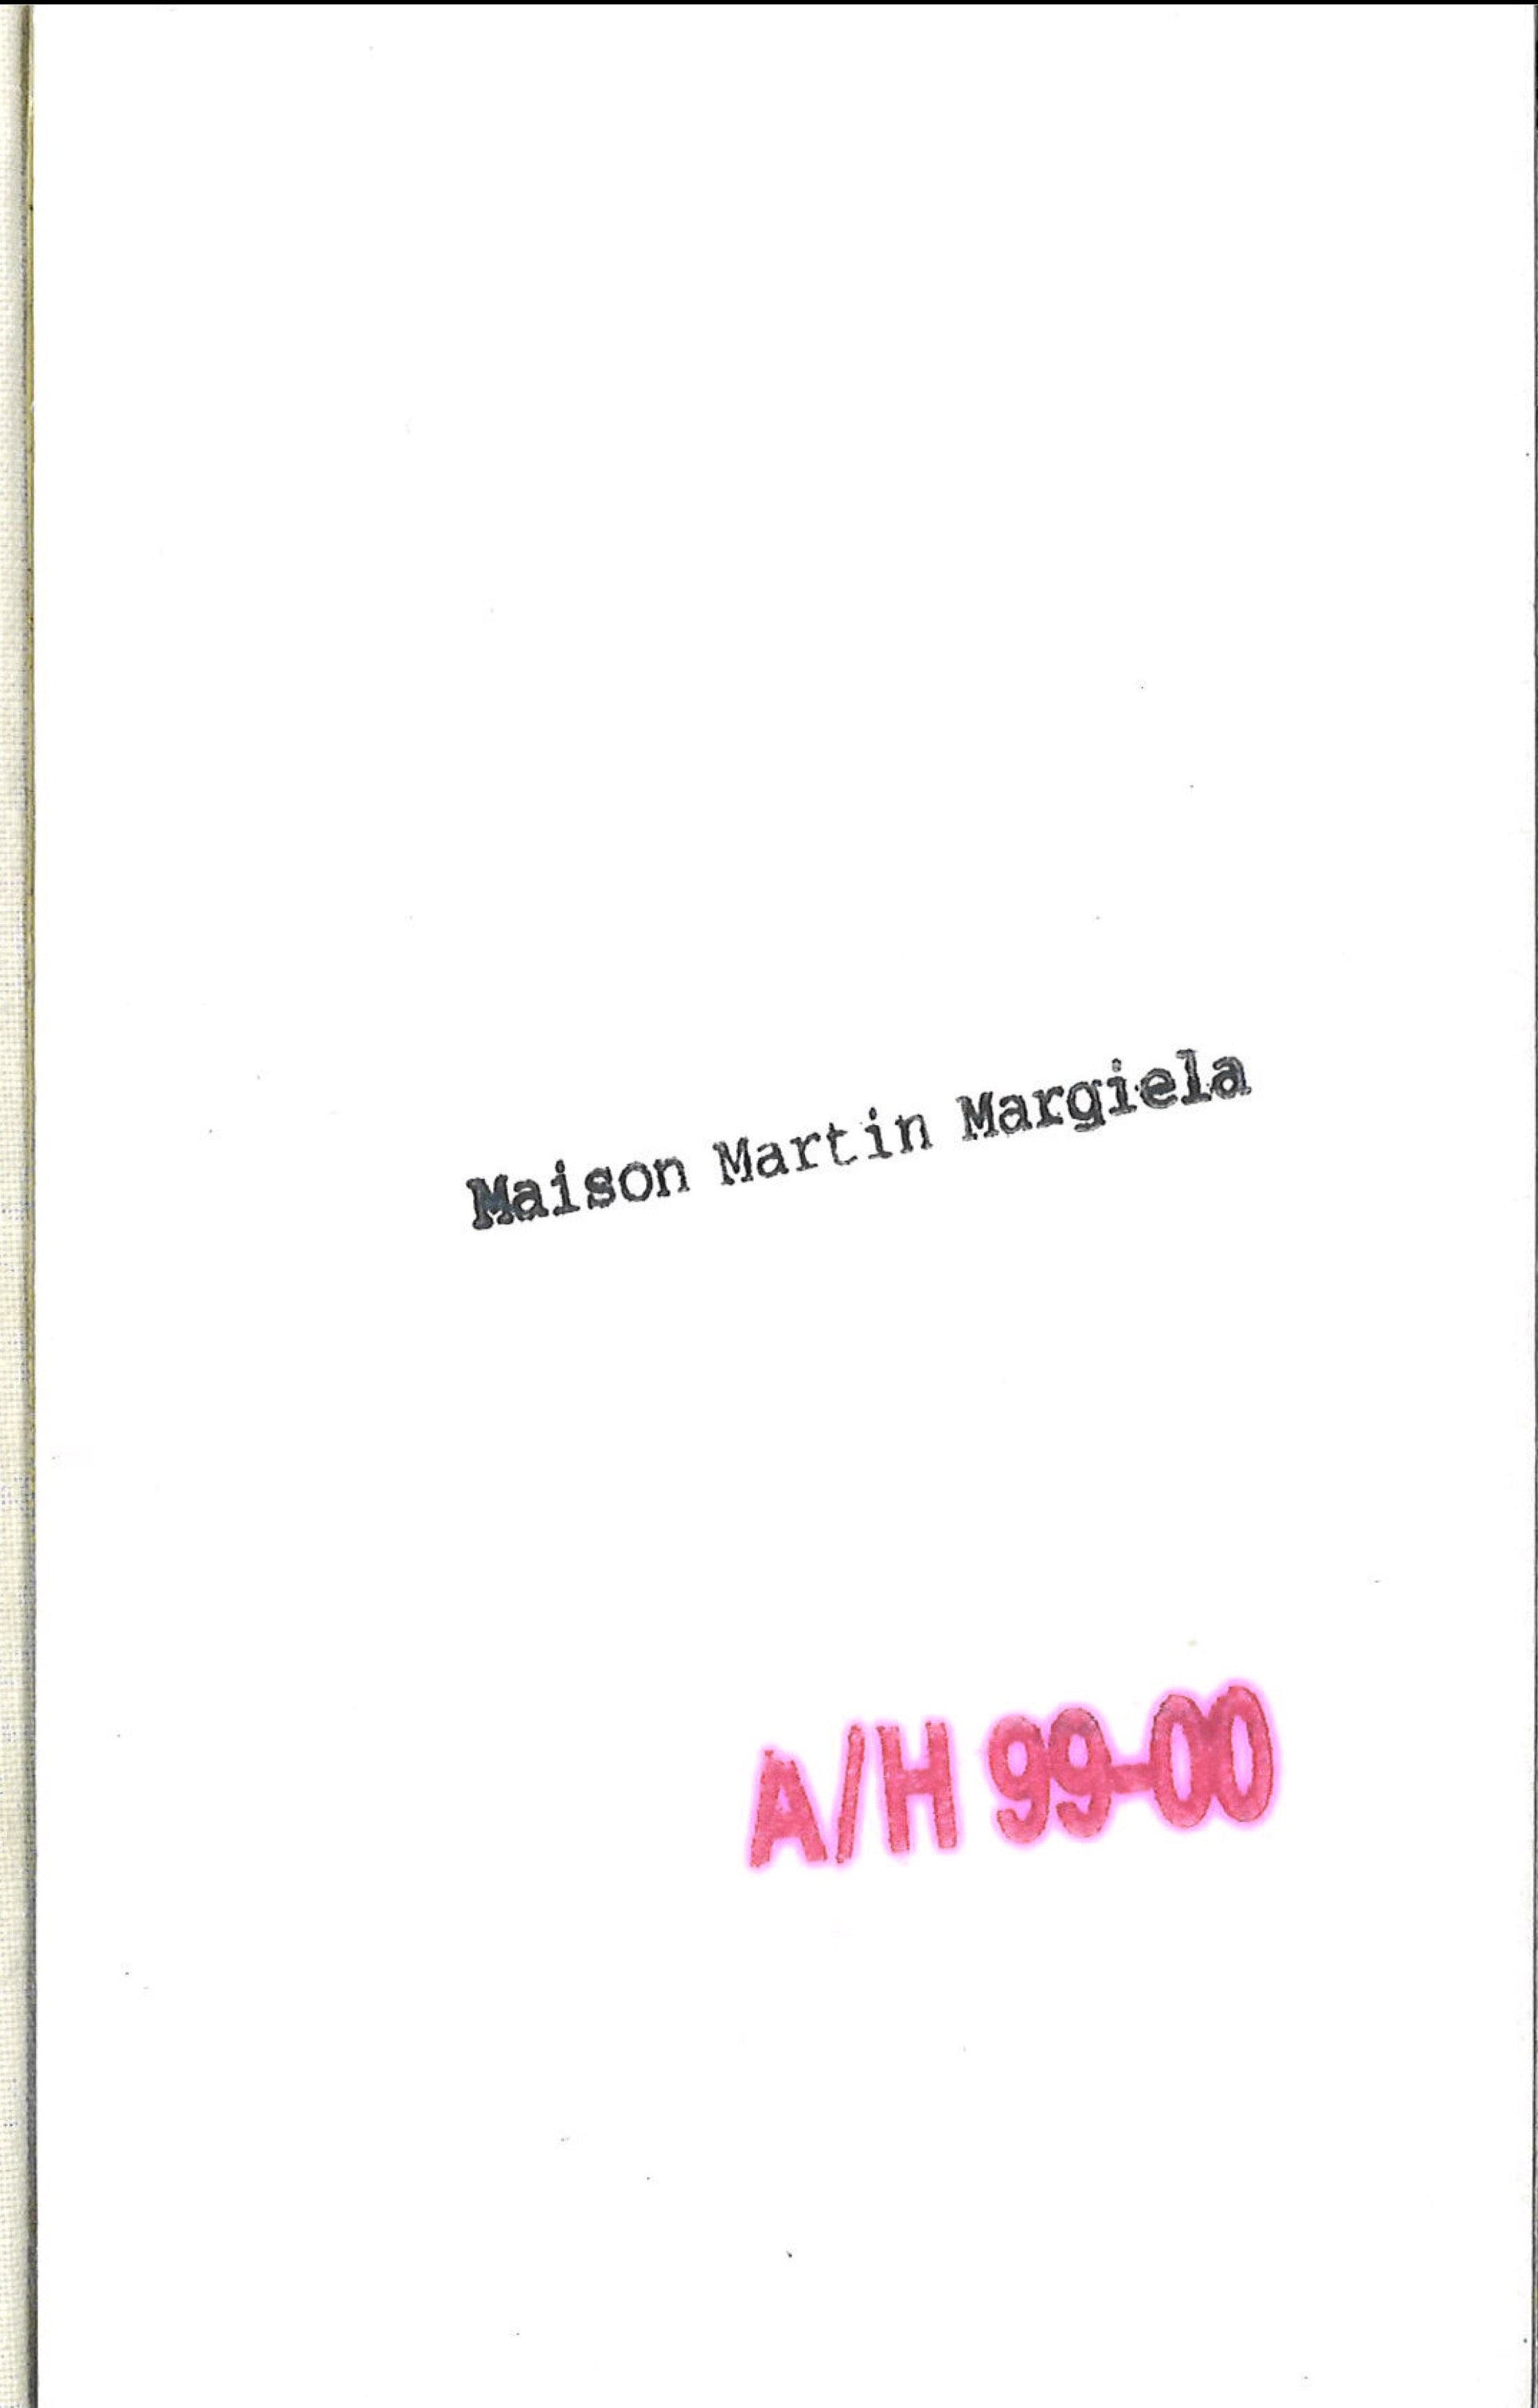 Maison Martin Margiela Lookbook
Menswear Collection Autumn/Winter 1999-2000